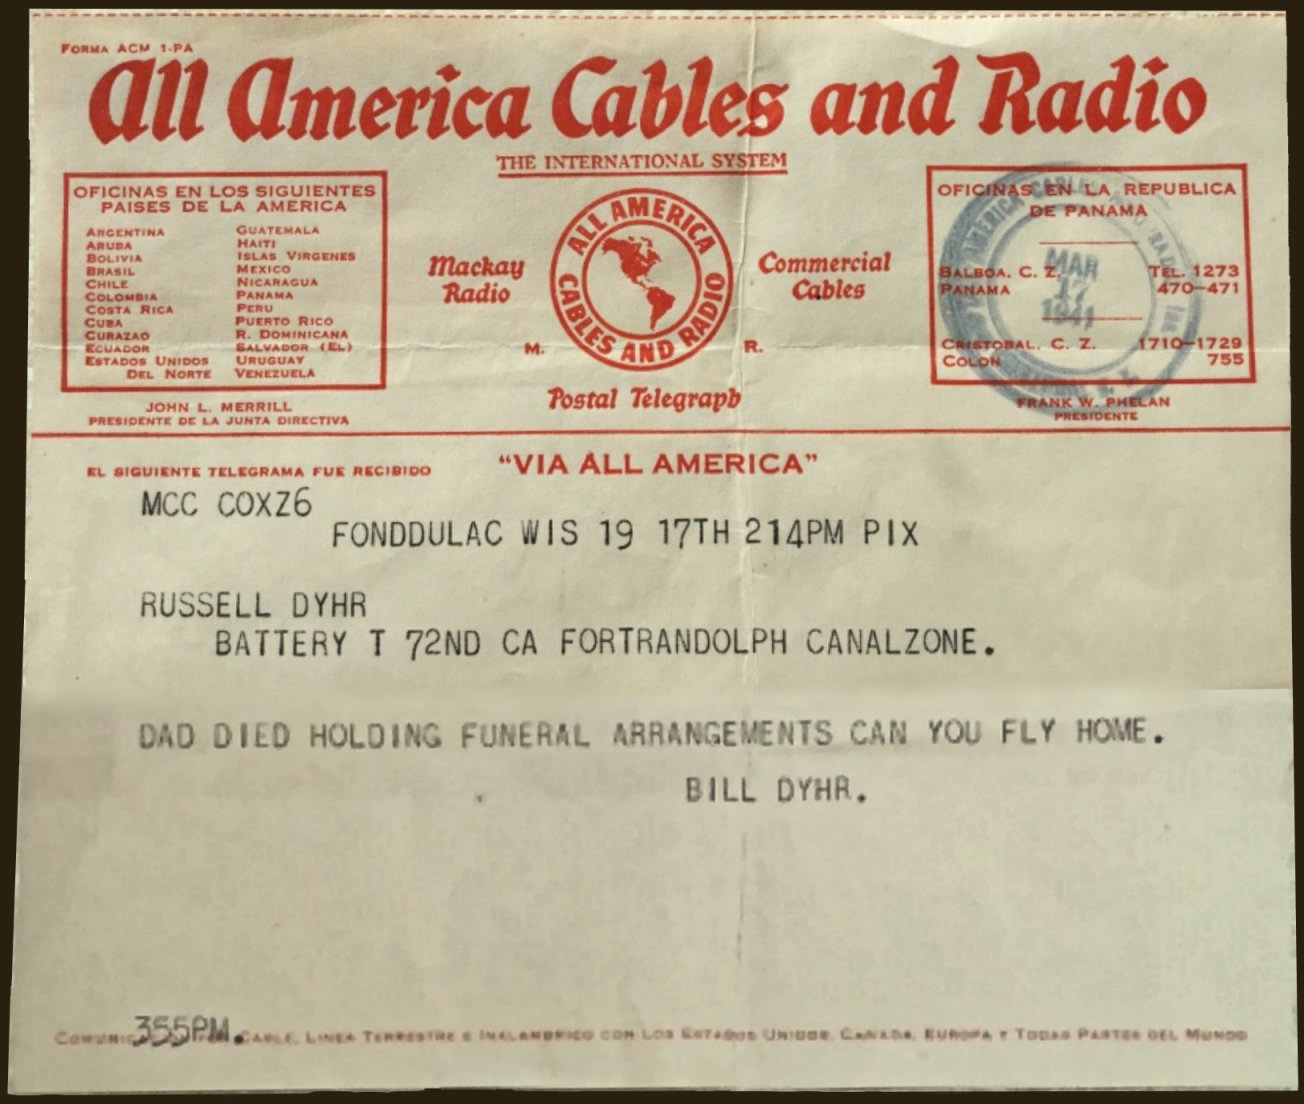 Panama telegram of 1941